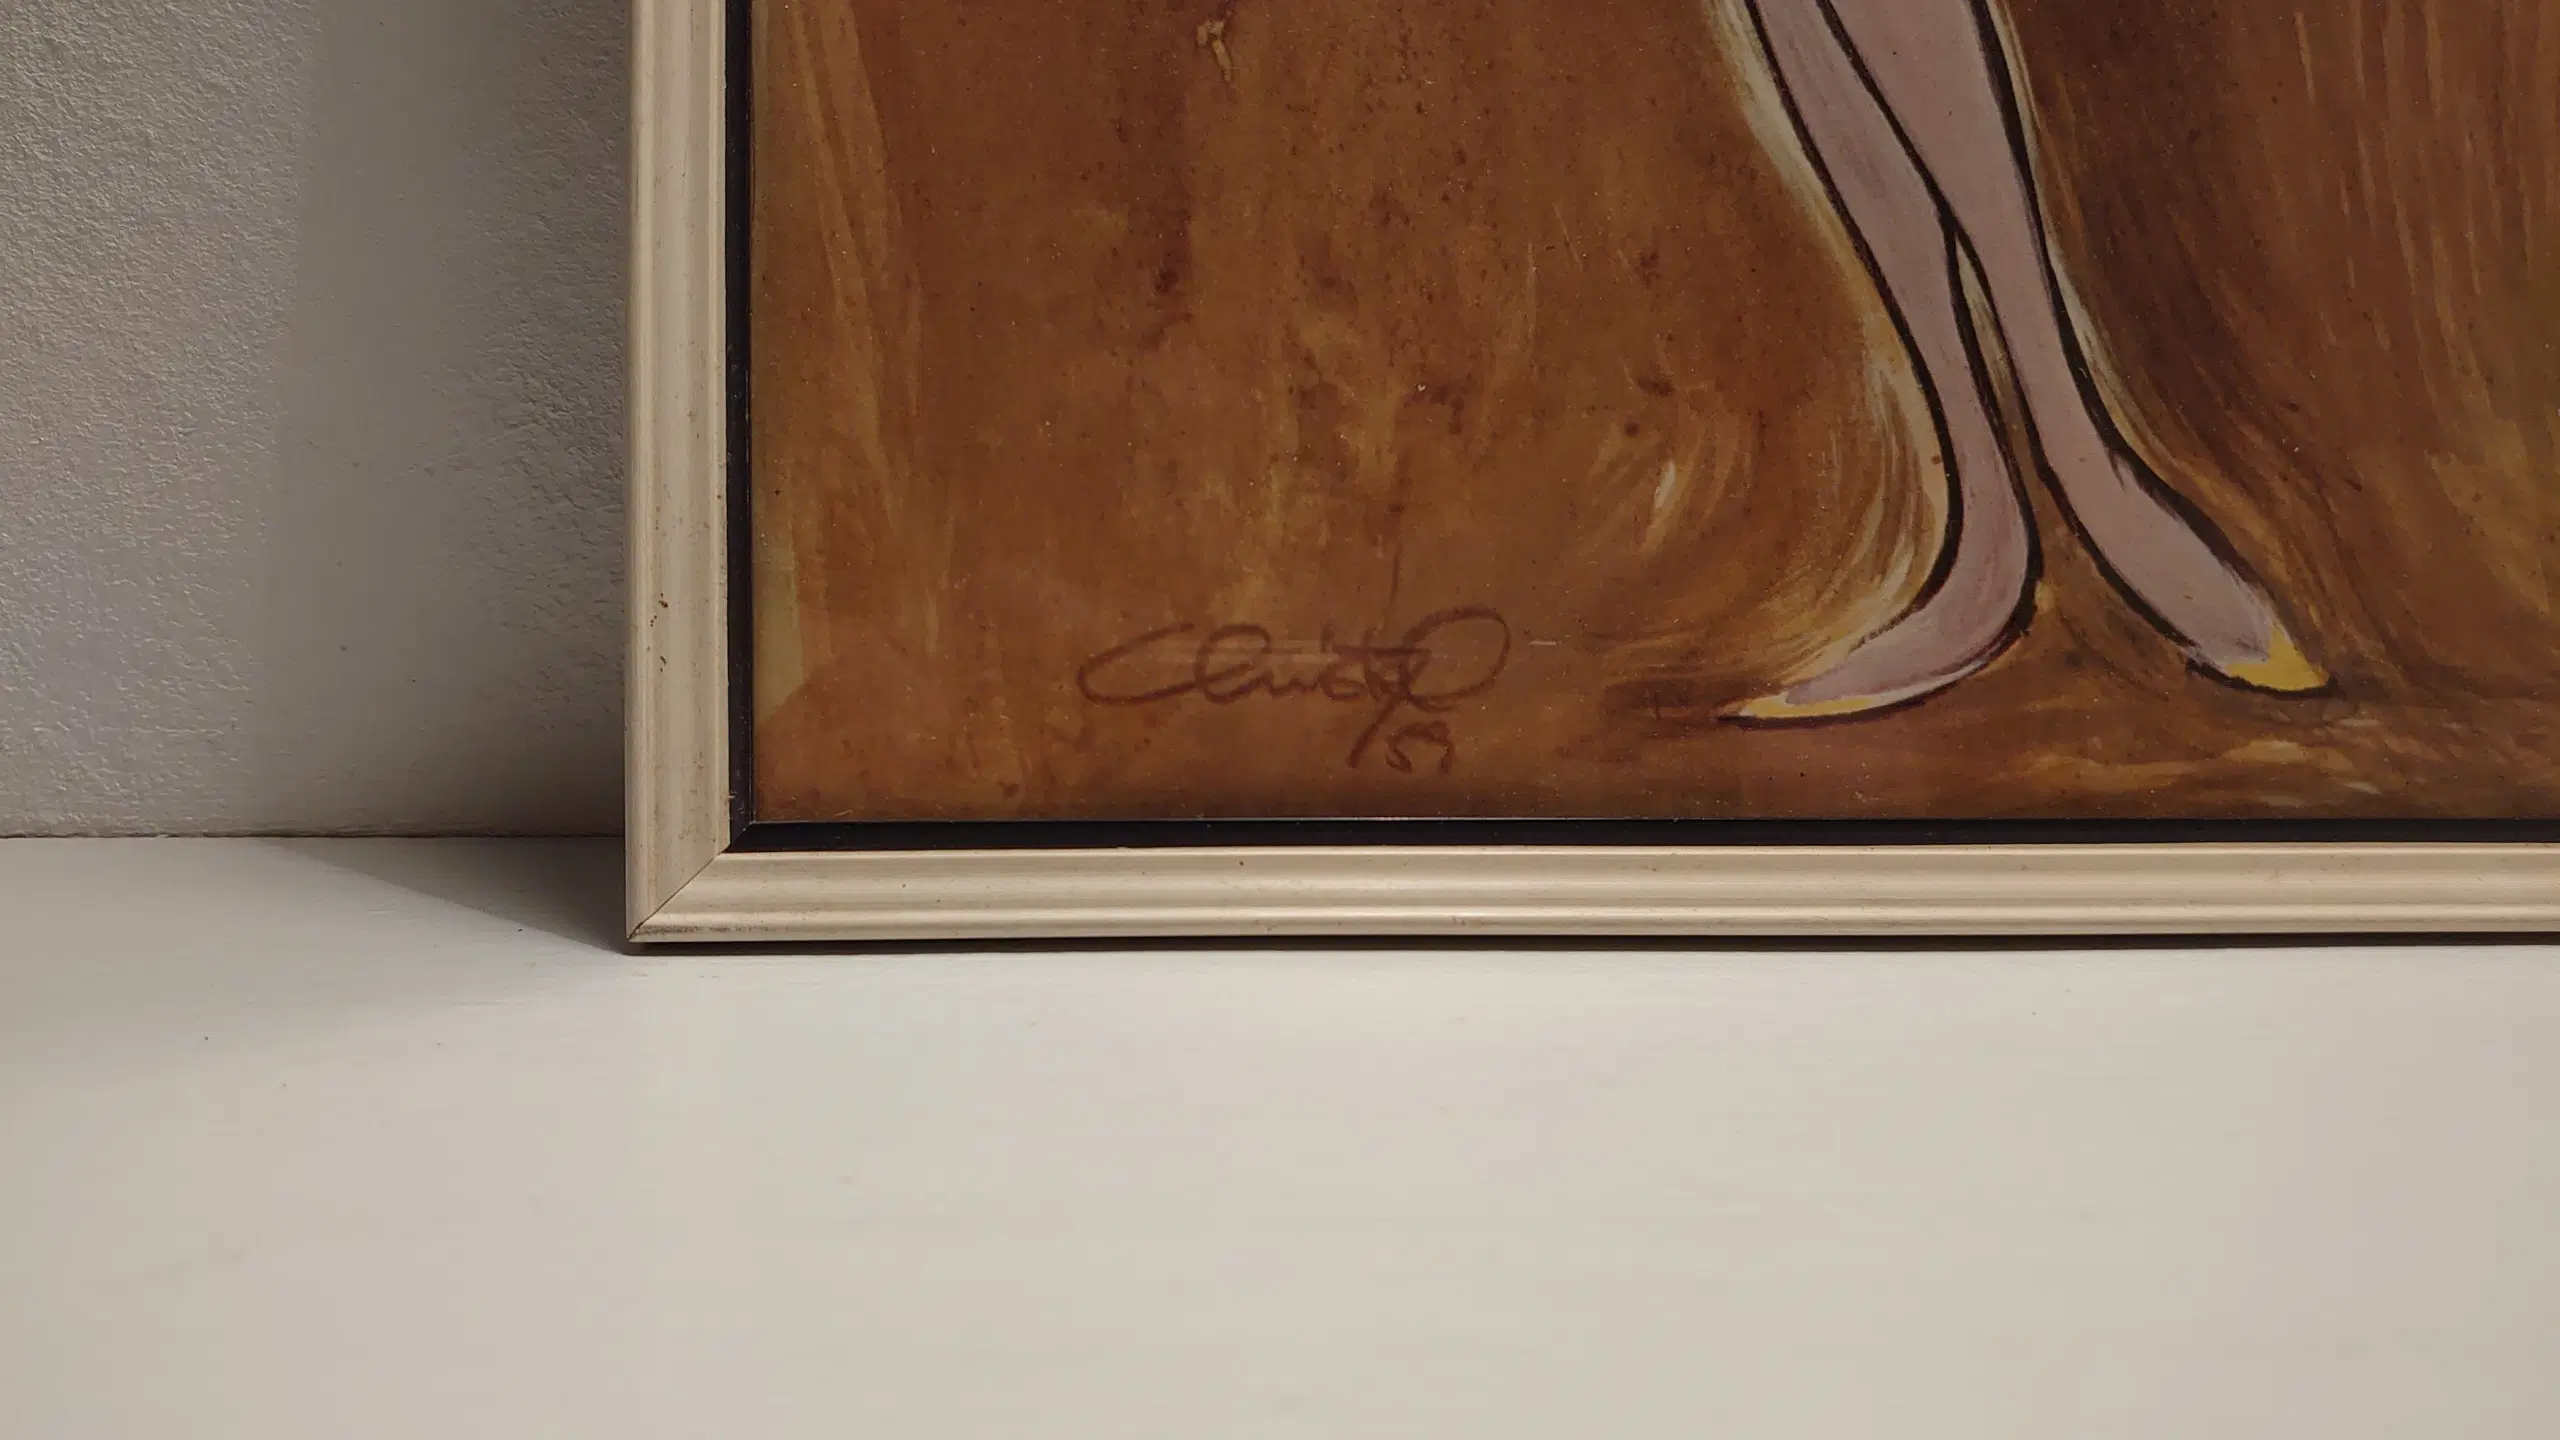 Christel tegning i original ramme (265x 385)cm